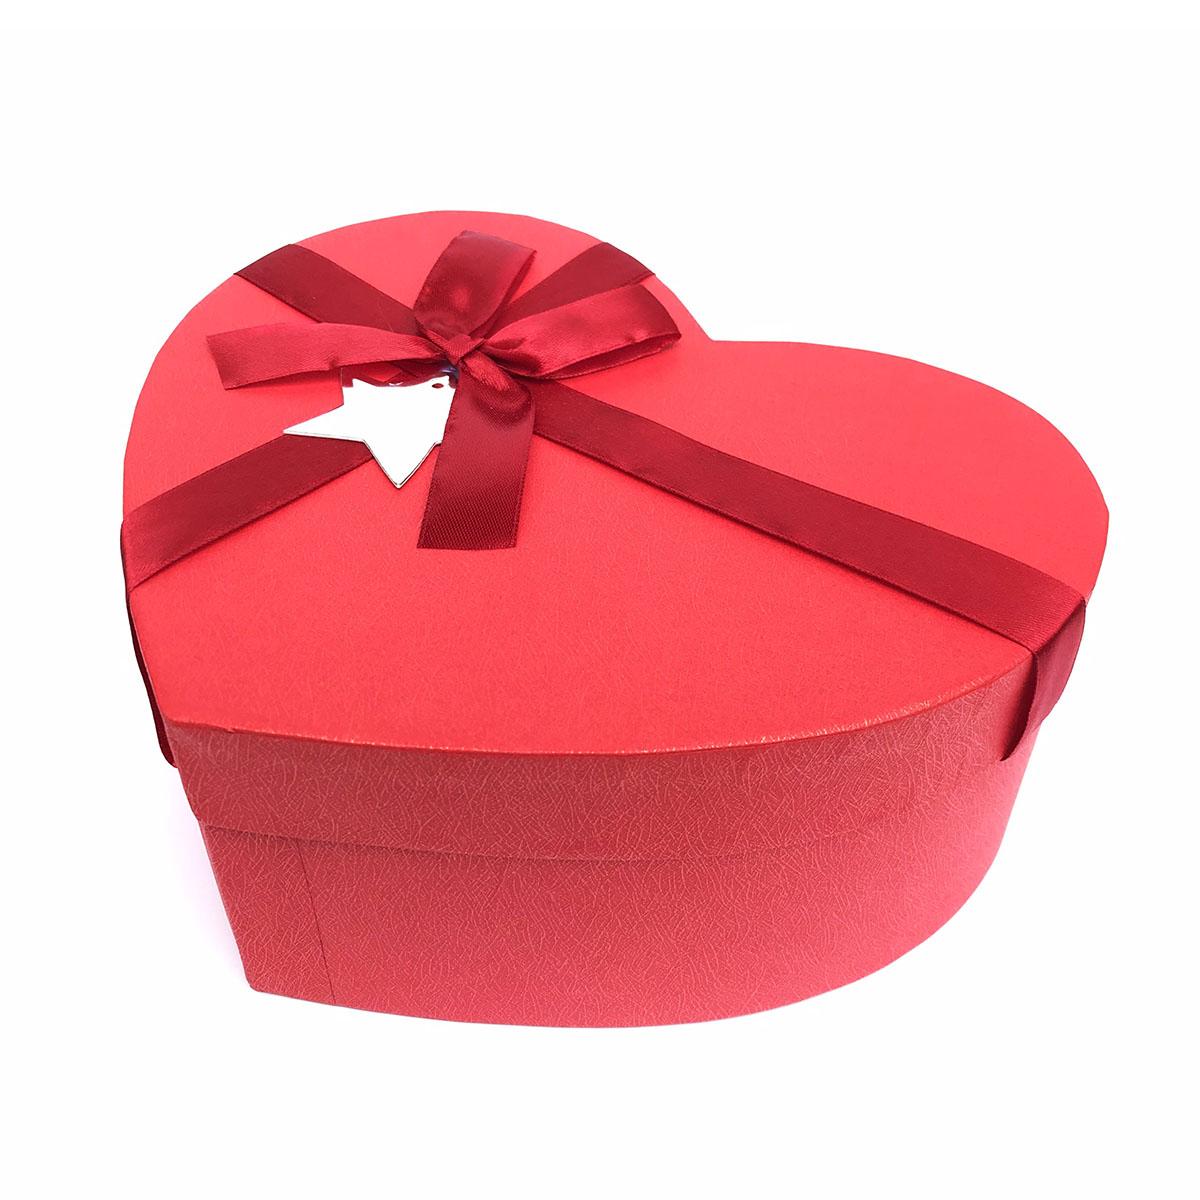 Mua Hộp quà tặng hình trái tim đỏ ngày Valentine | Tiki